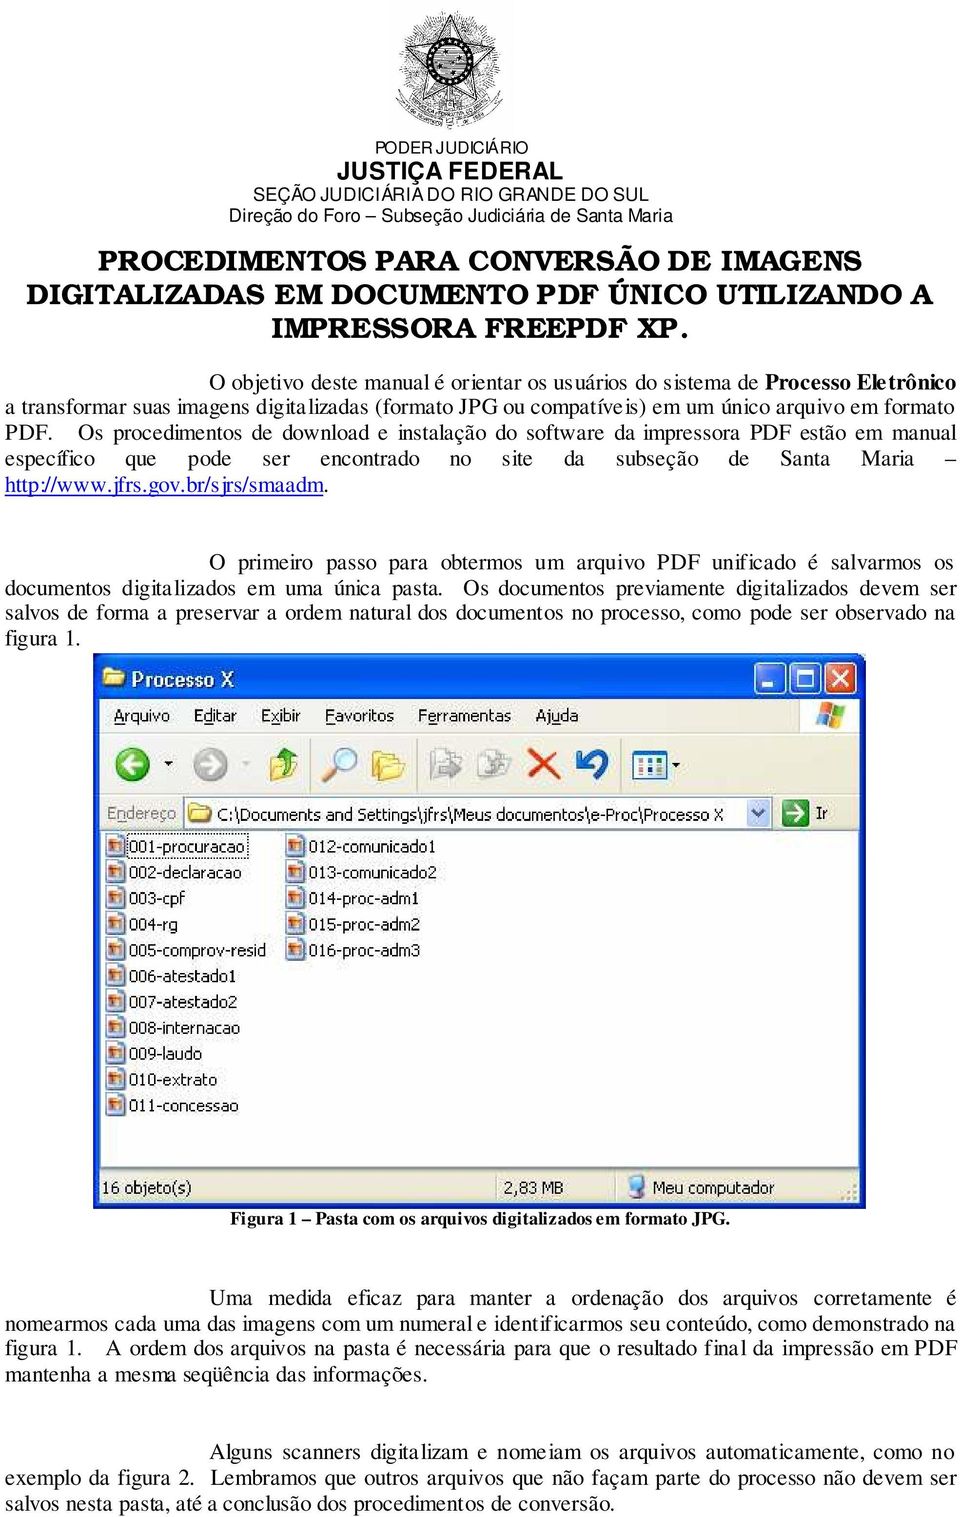 Os procedimentos de download e instalação do software da impressora PDF estão em manual específico que pode ser encontrado no site da subseção de Santa Maria http://www.jfrs.gov.br/sjrs/smaadm.